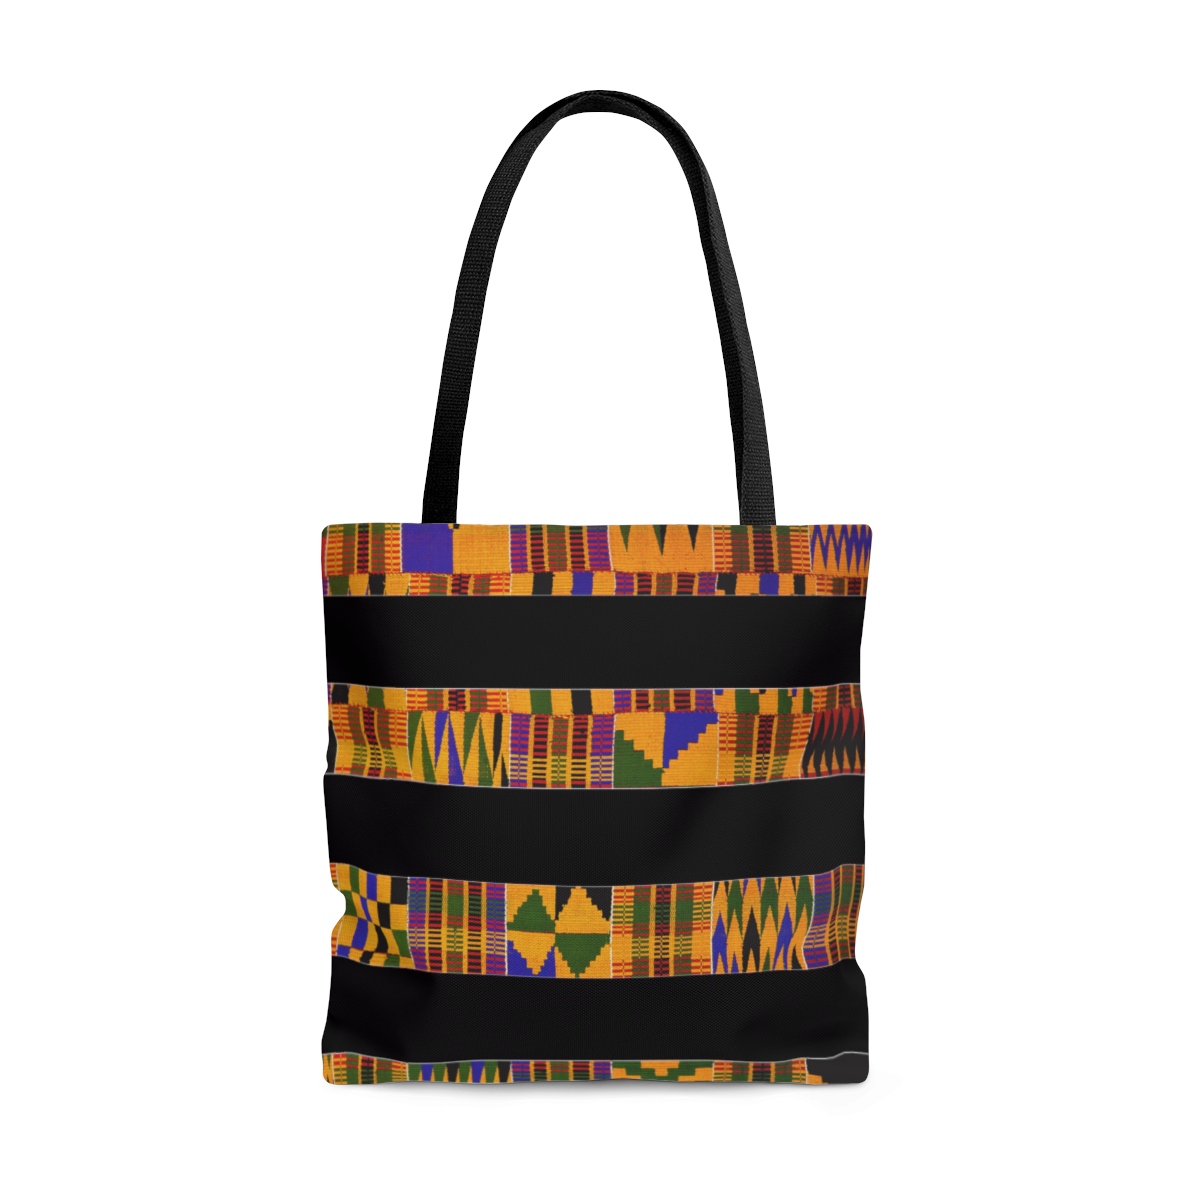 Copy of African Print Tote Bag  Ankara print tote bag  